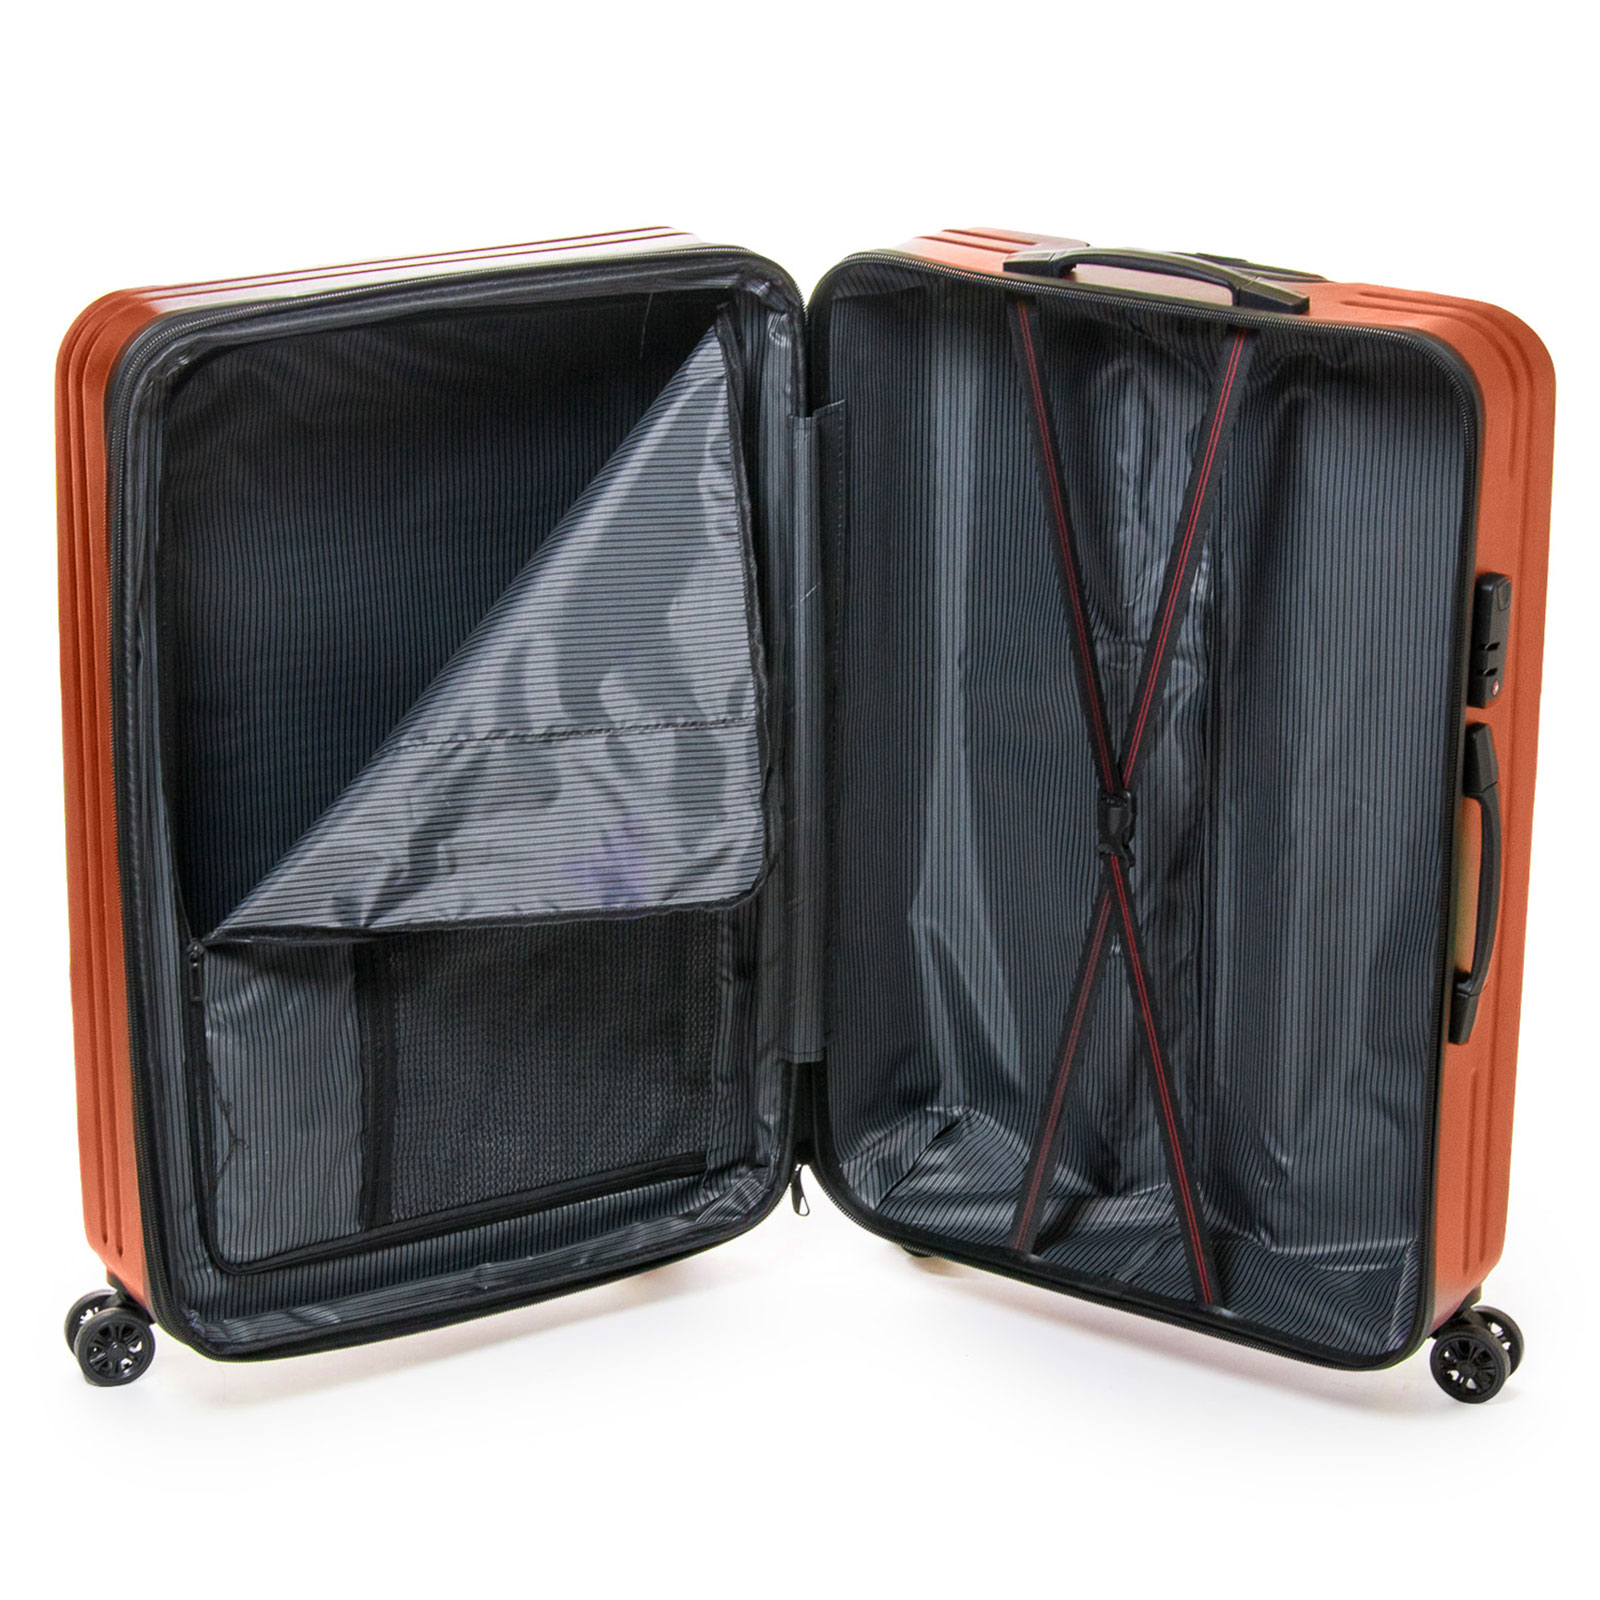 Дорожня помаранчева пластикова валіза комплект 3 в 1 804 orange